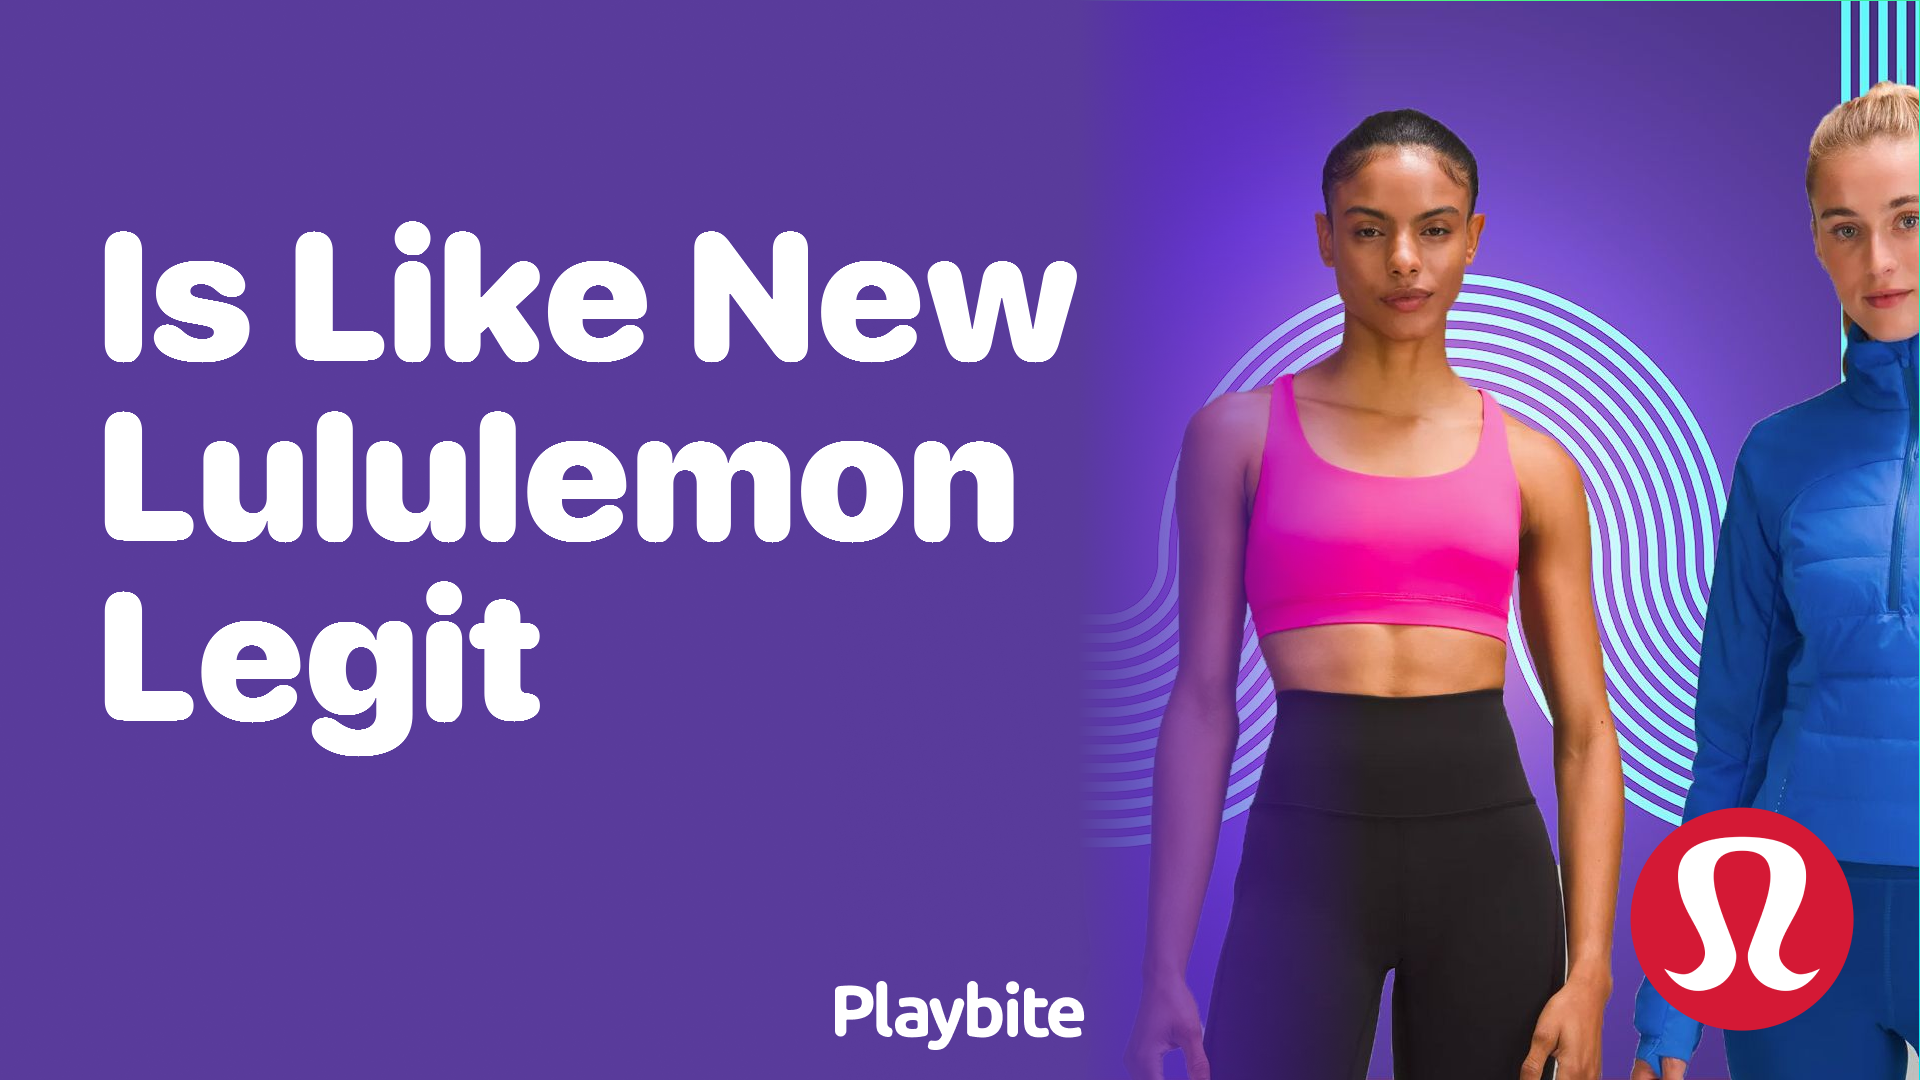 Is 'Like New' Lululemon Legit? Let's Unpack the Truth! - Playbite